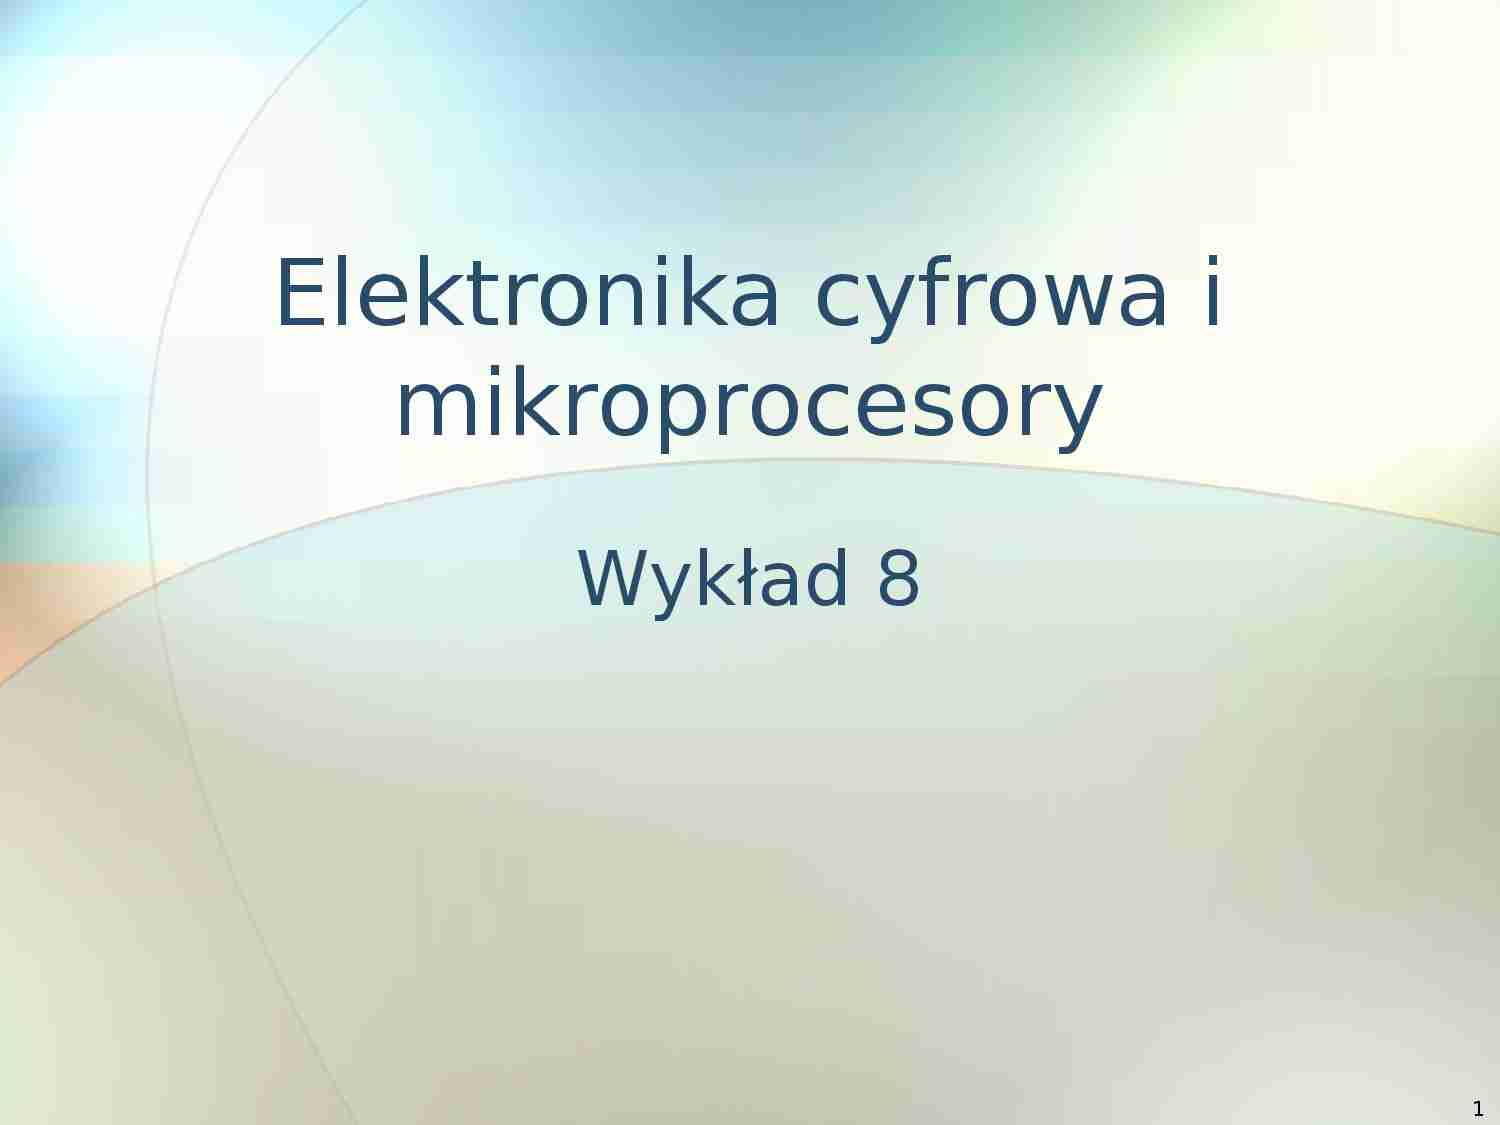 Elektronika cyfrowa i mikroprocesory  - omówienie -  Rejestry procesora - strona 1